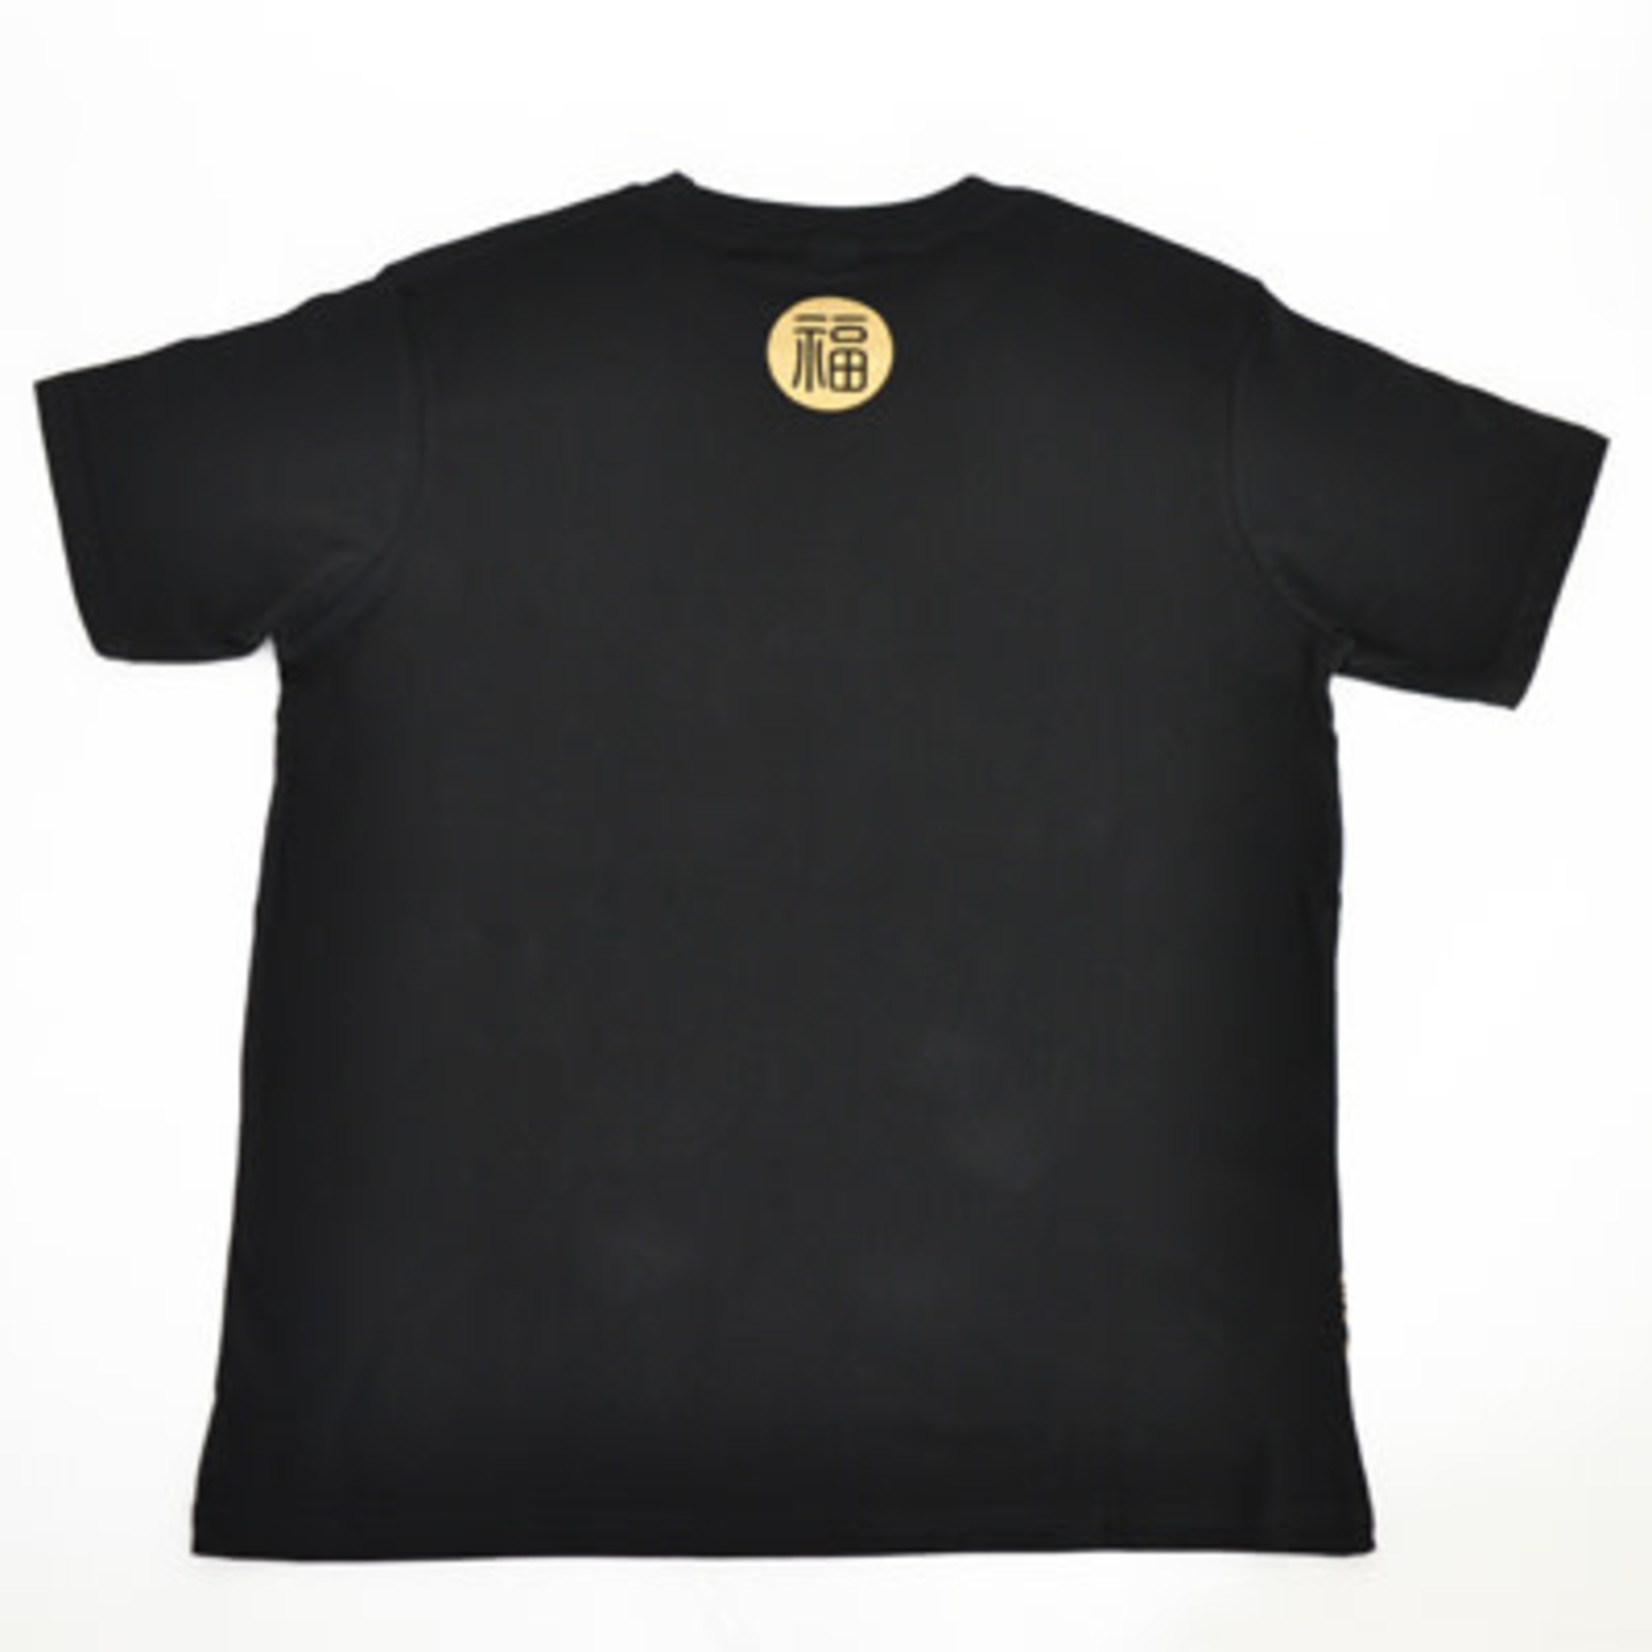 T-Shirt - Maneki Neko (Black) - W4-1111